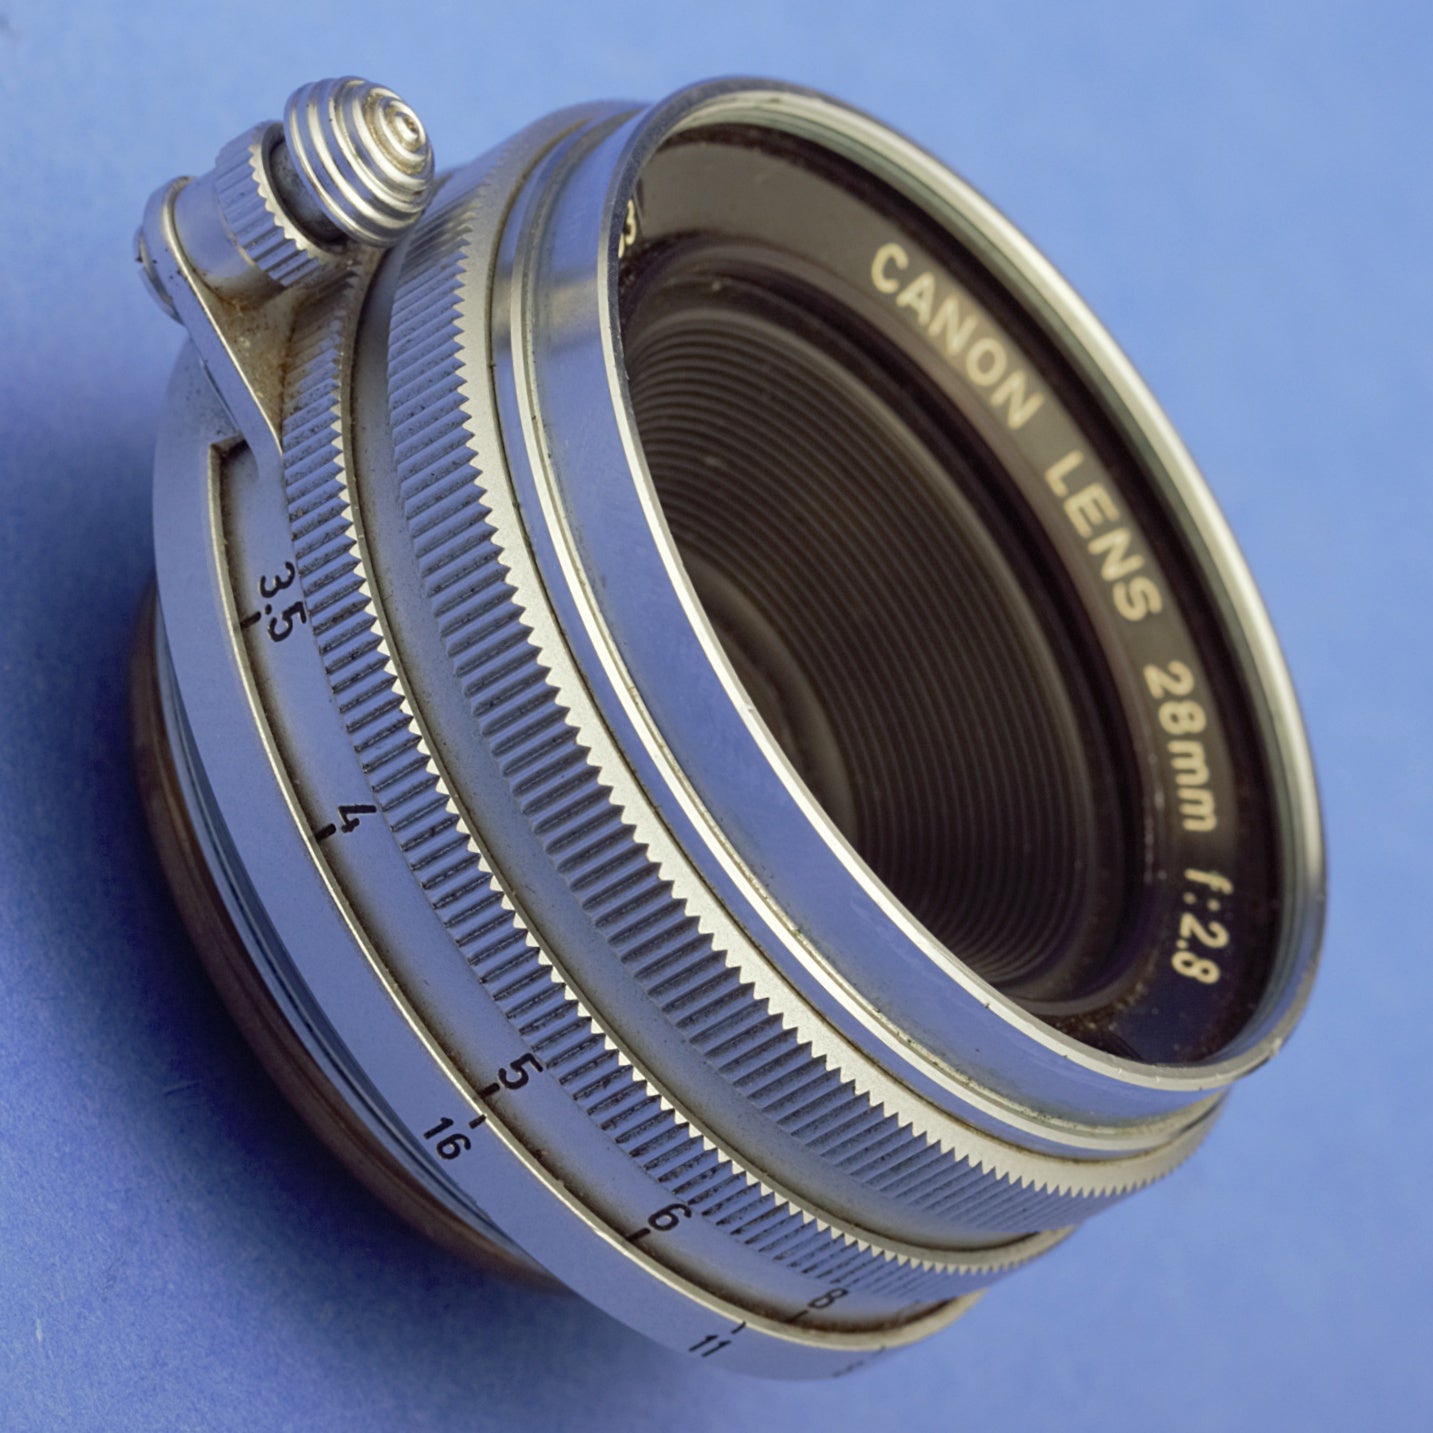 Canon 28mm 2.8 LTM Rangefinder Lens with Finder